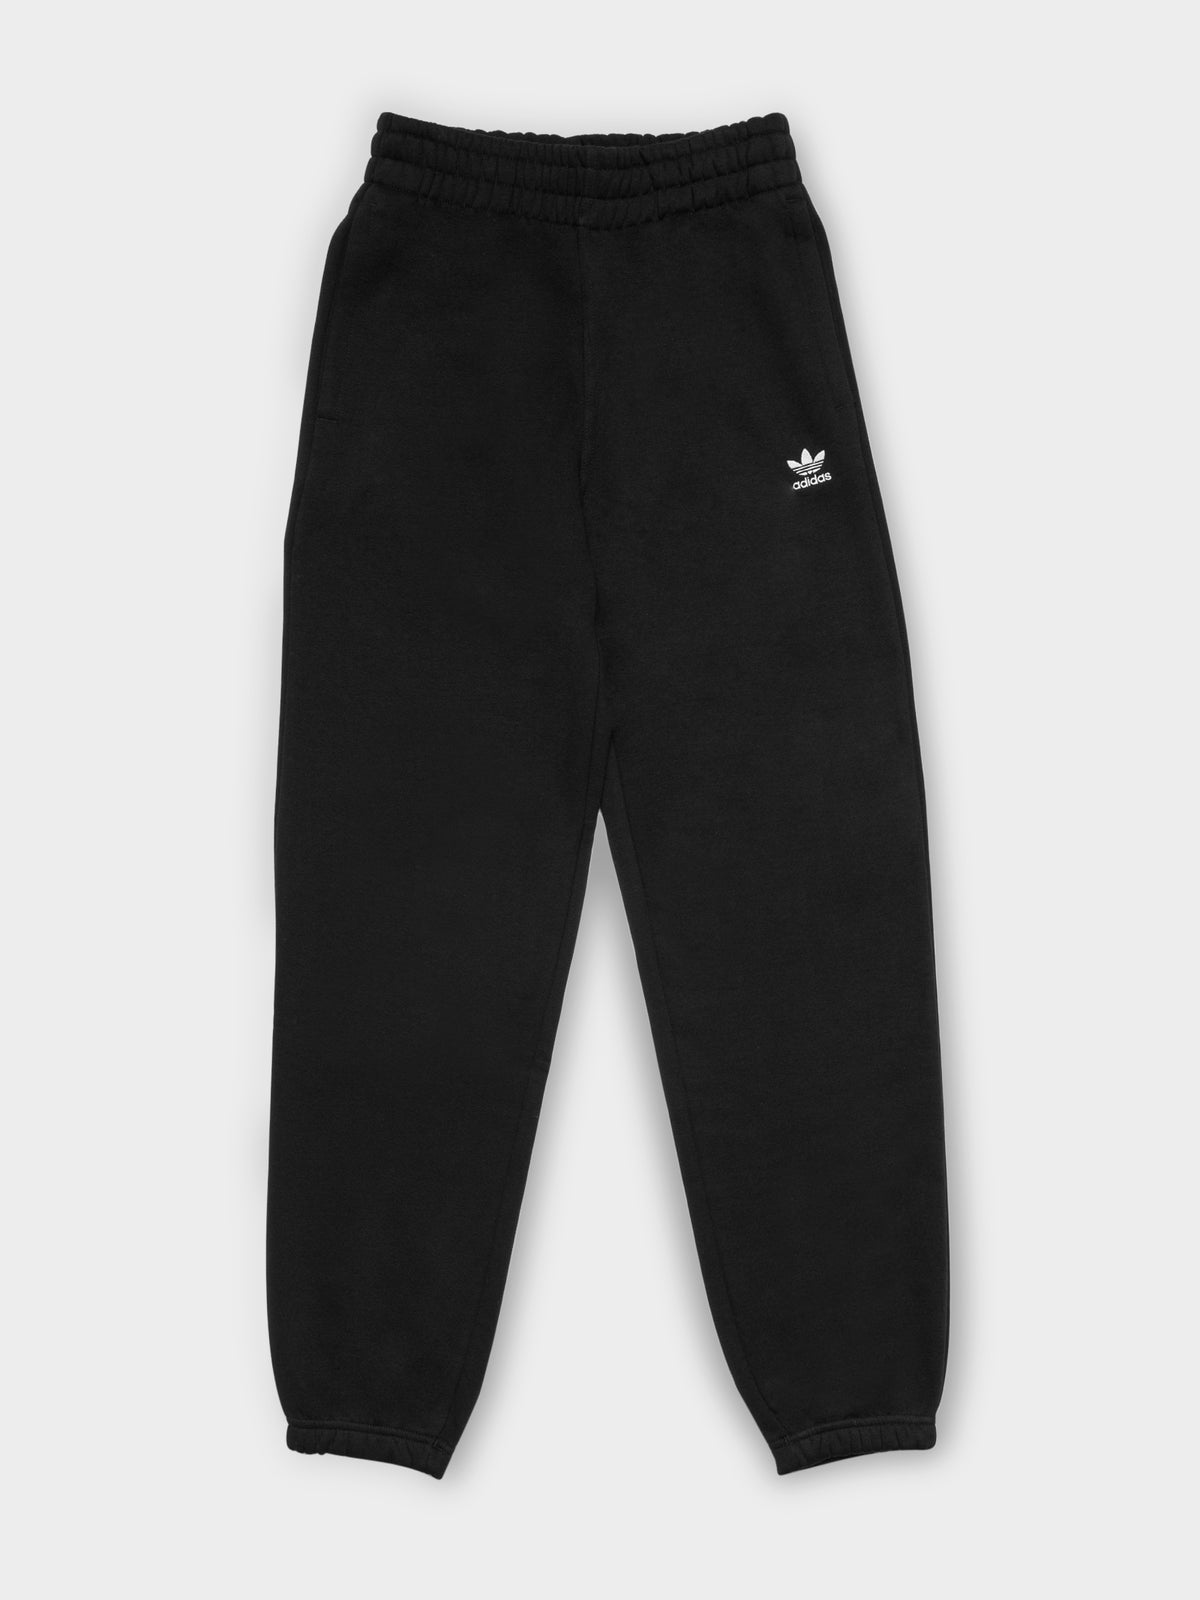 Adidas Pants in Black